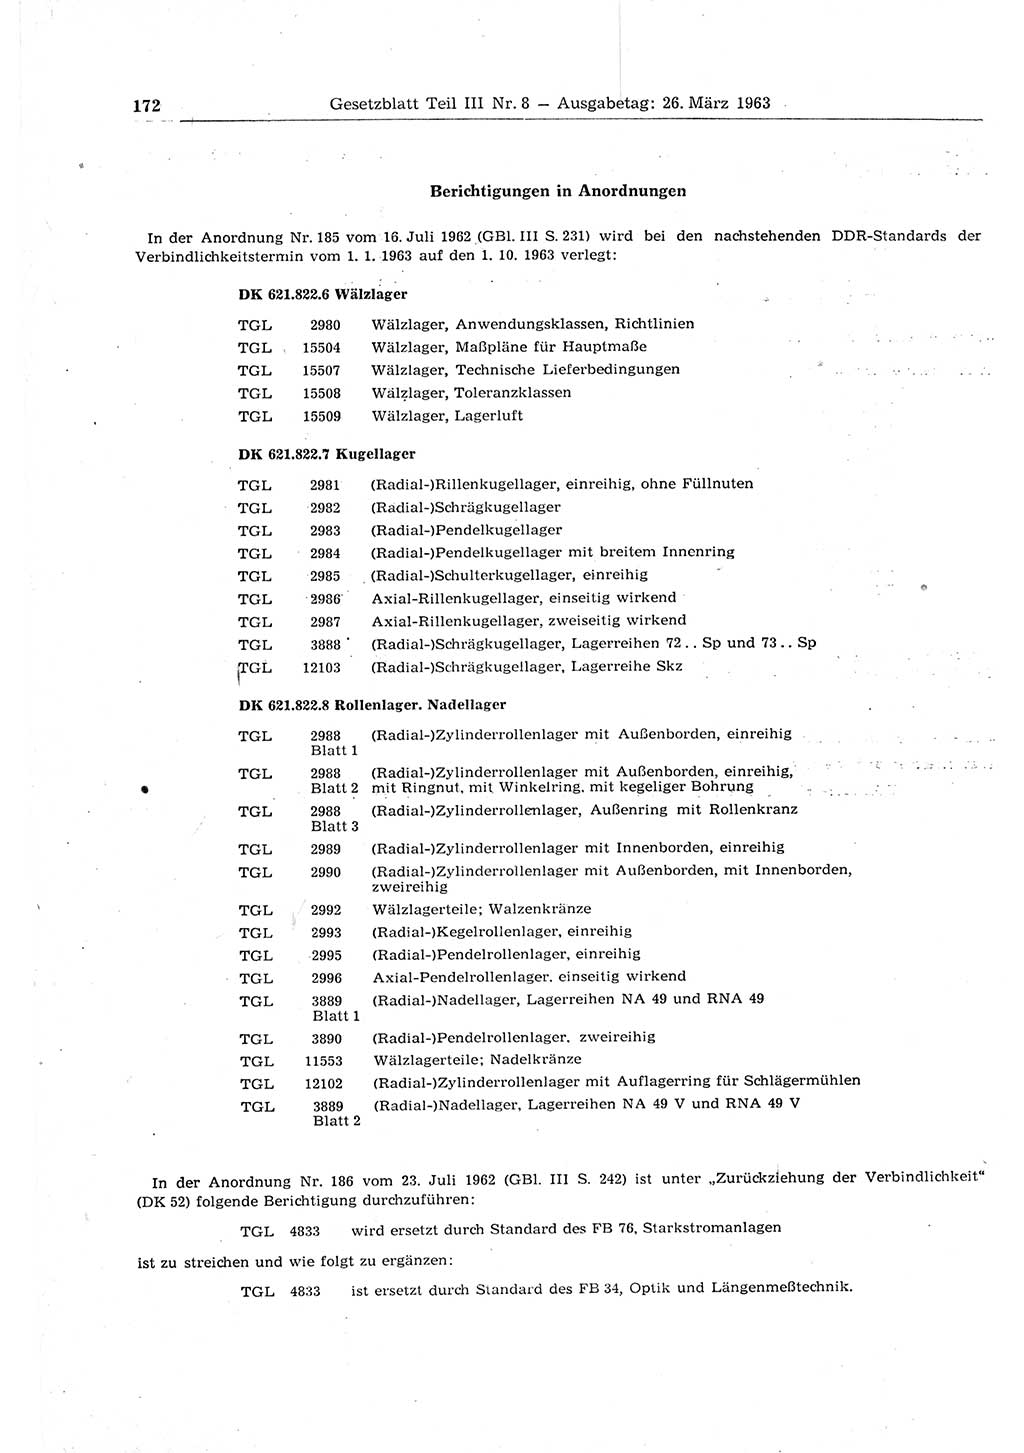 Gesetzblatt (GBl.) der Deutschen Demokratischen Republik (DDR) Teil ⅠⅠⅠ 1963, Seite 172 (GBl. DDR ⅠⅠⅠ 1963, S. 172)